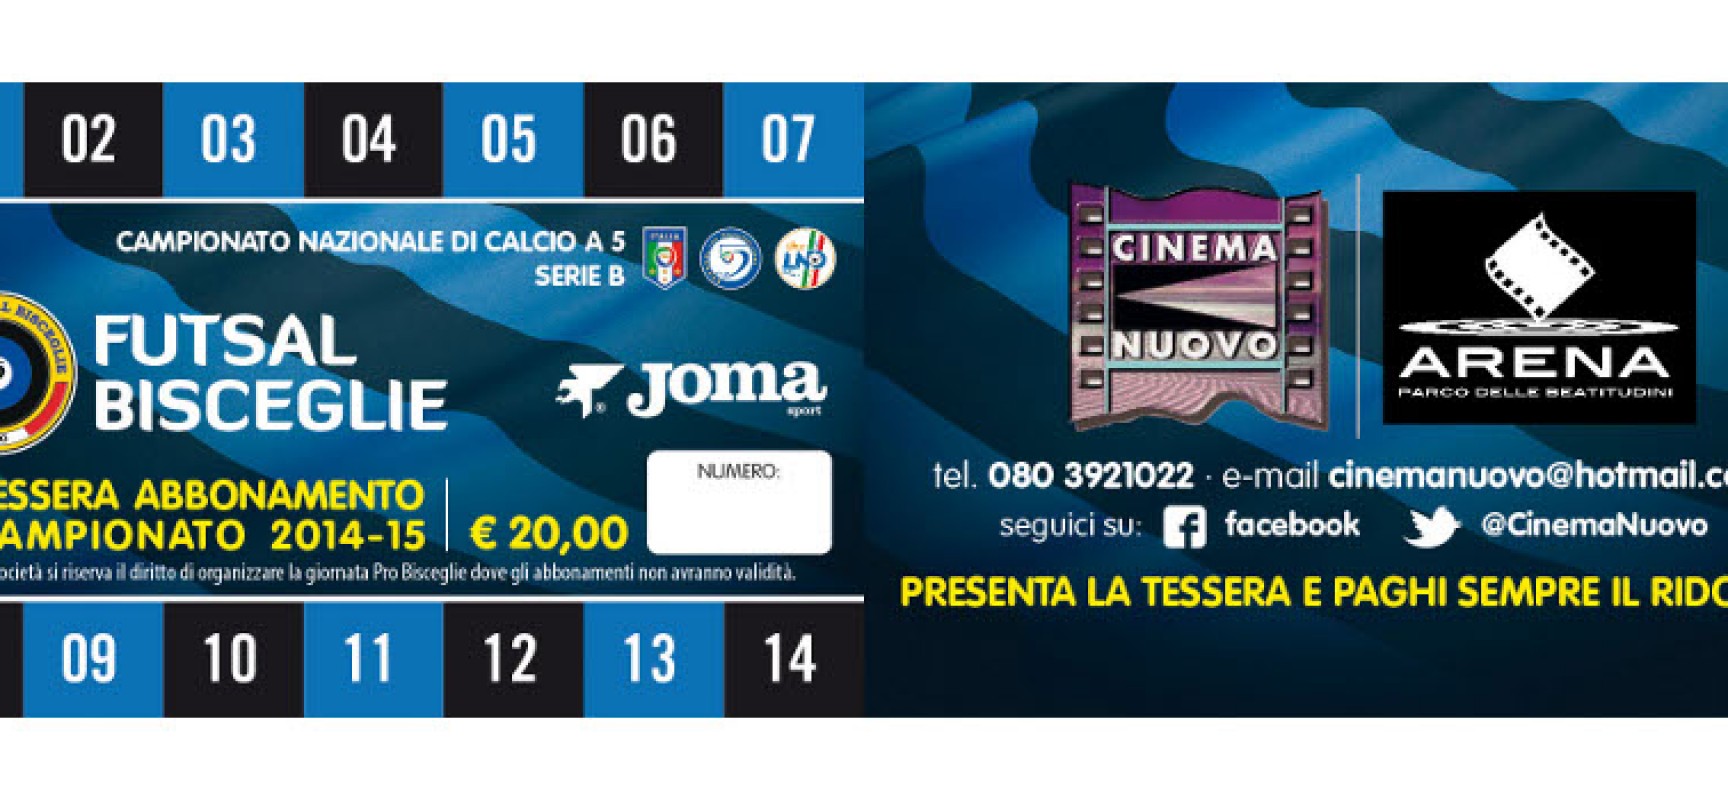 Futsal Bisceglie, parte la campagna abbonamenti 2014/15